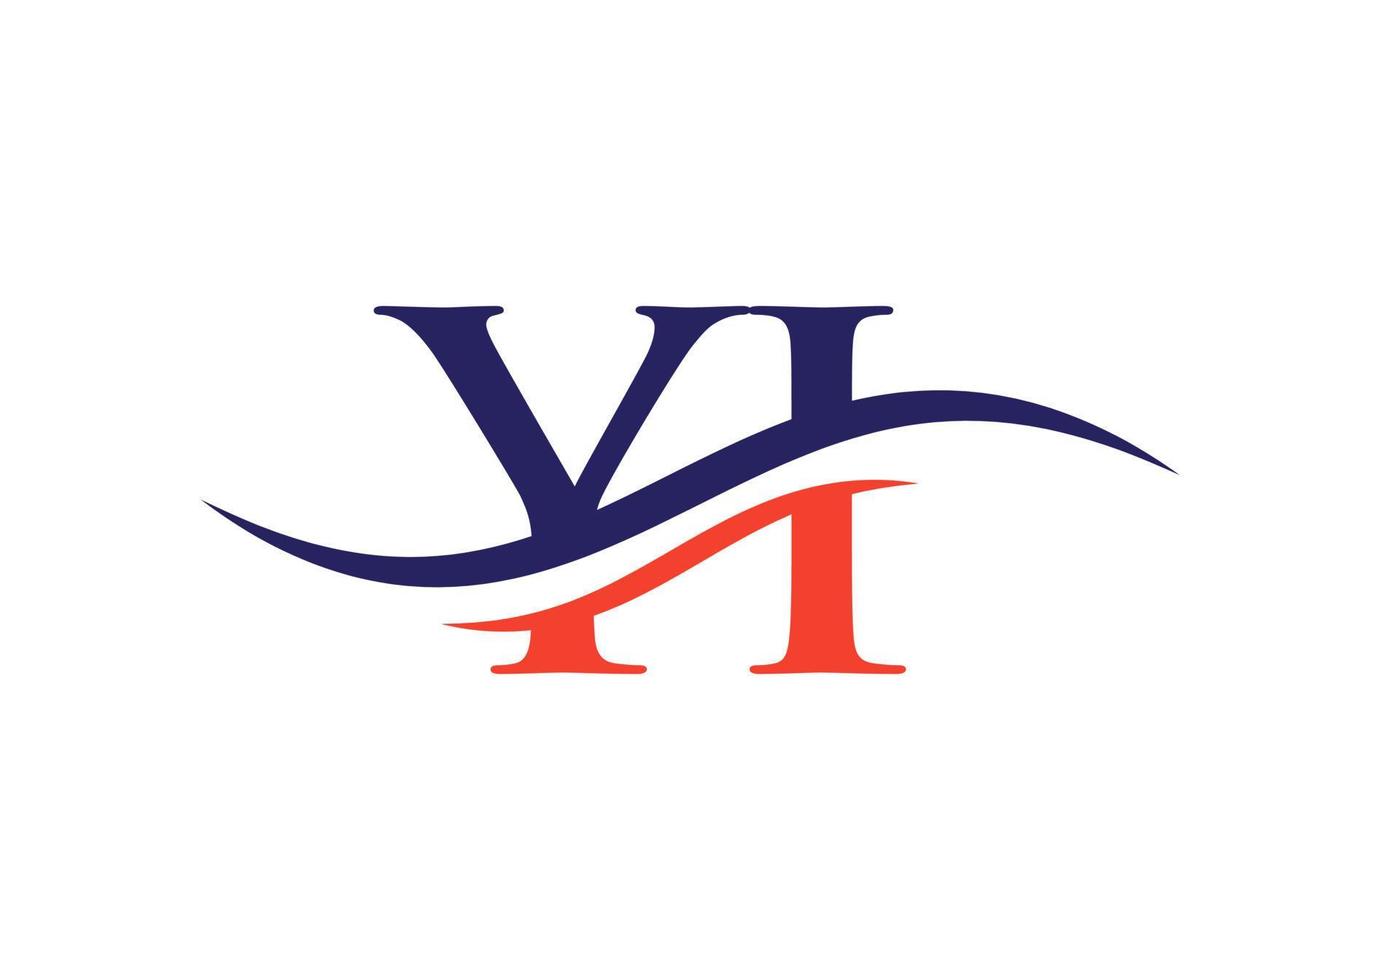 diseño moderno del logotipo yi para la identidad empresarial y empresarial. carta yi creativa con concepto de lujo vector